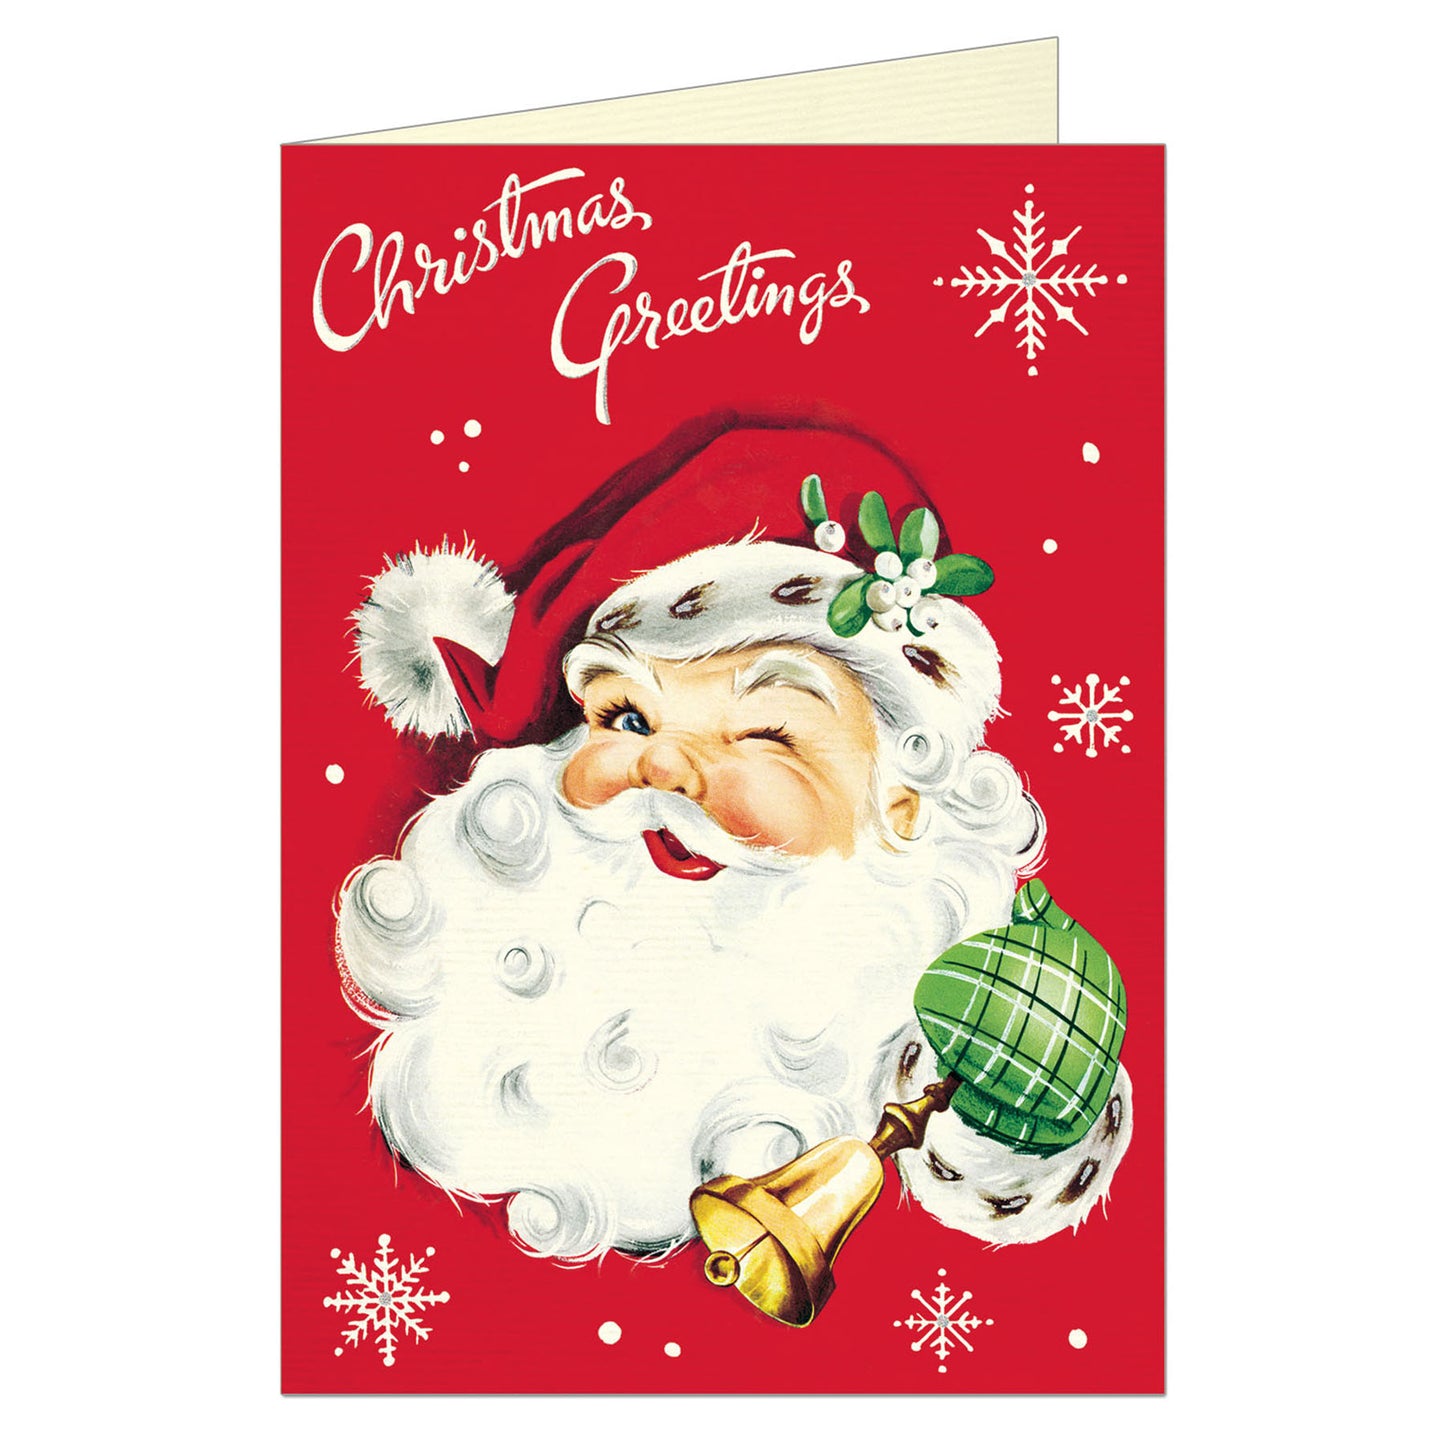    Santa_Christmas_Greeting_Card